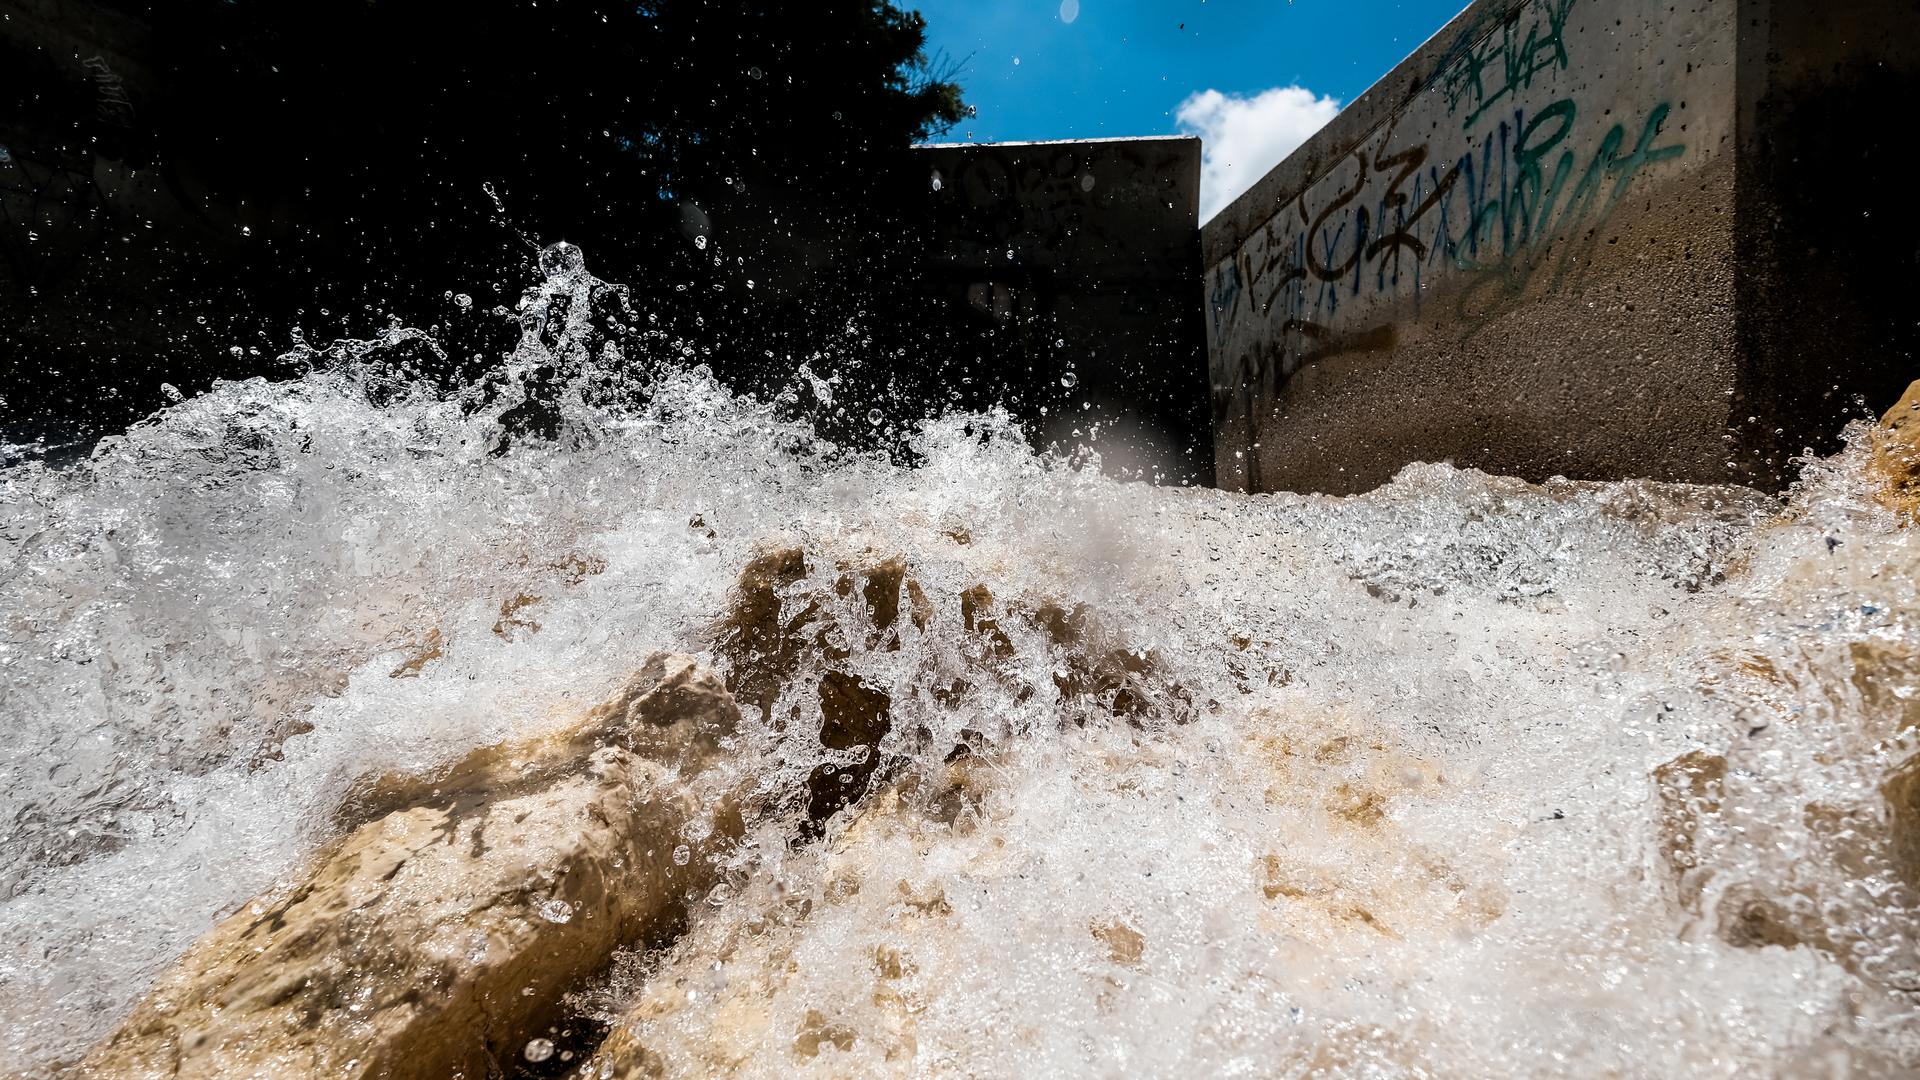 Água dessalinizada entra na barragem de La Pedrera, onde se mistura com o que chega do transvase Tejo-Segura.